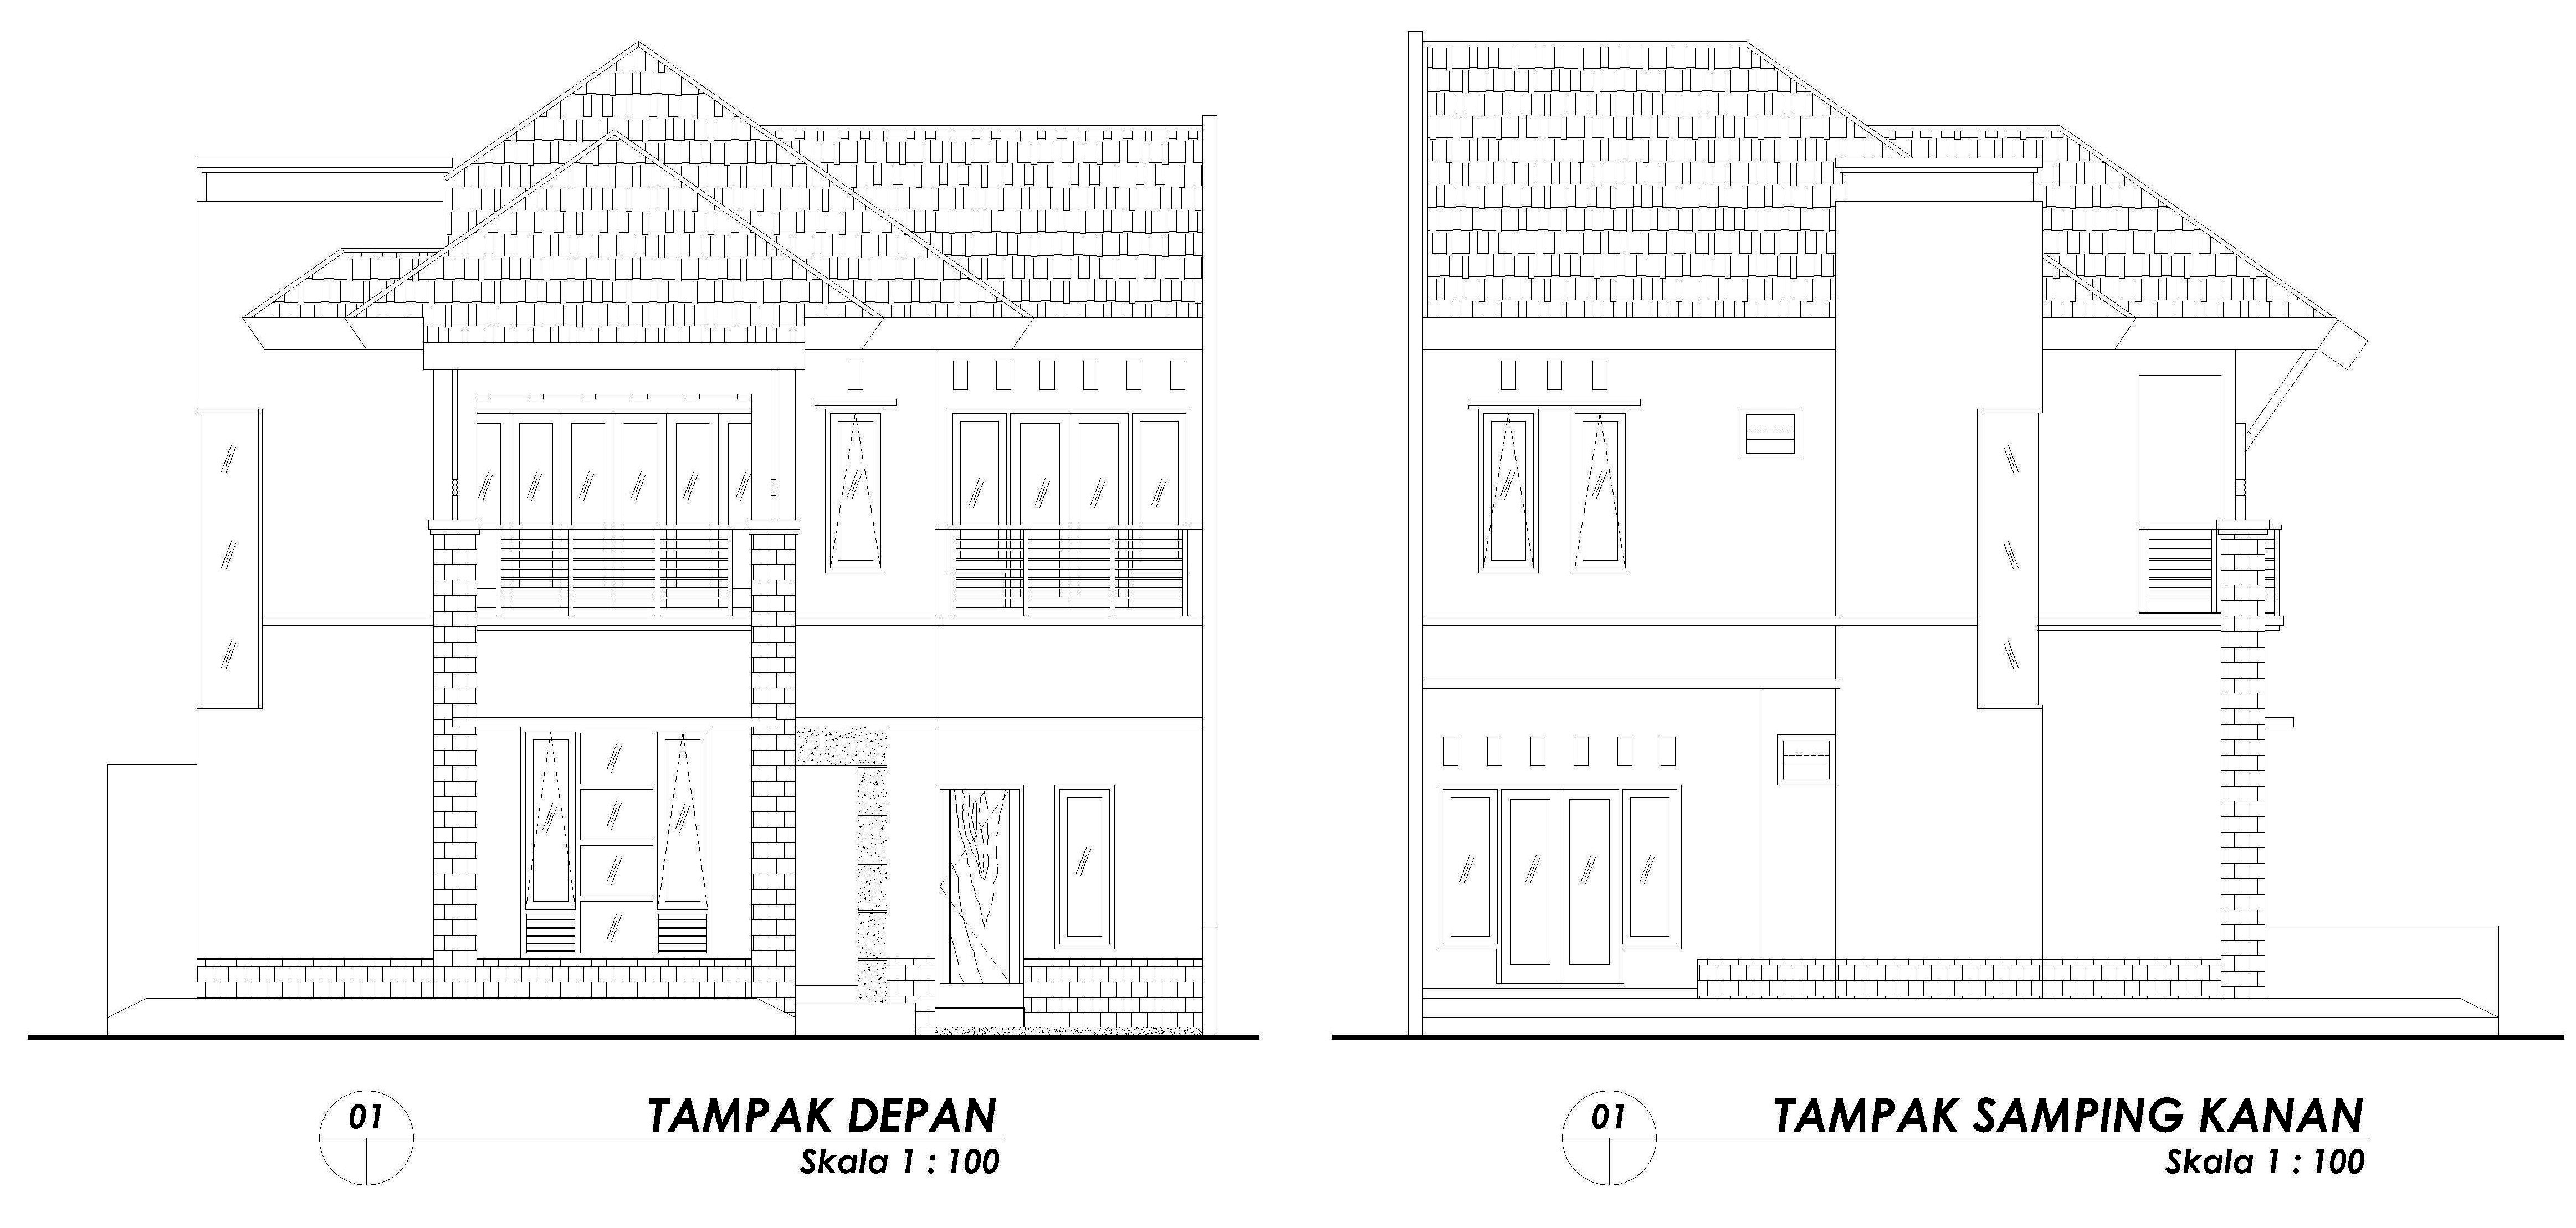 25 Gambar Sketsa Rumah Tampak Depan Dan Samping Design Info On